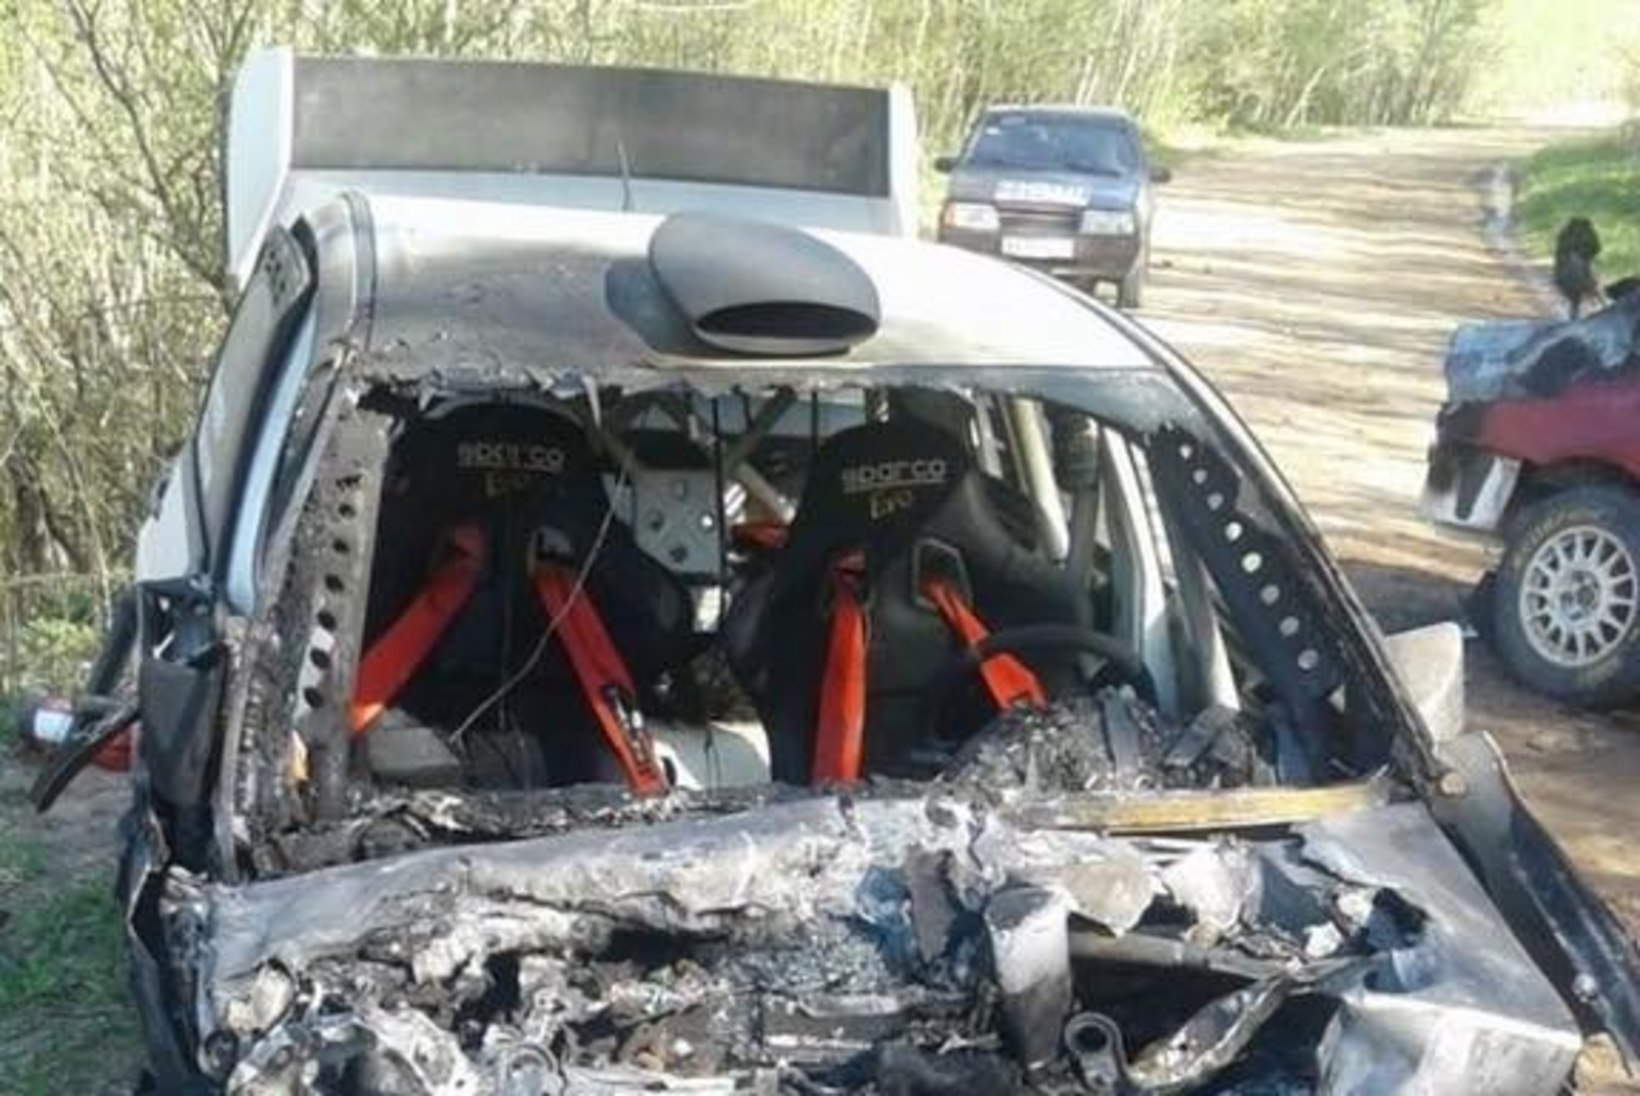 FOTOD | Venemaa rallisõitjate autod hävisid avariis täielikult